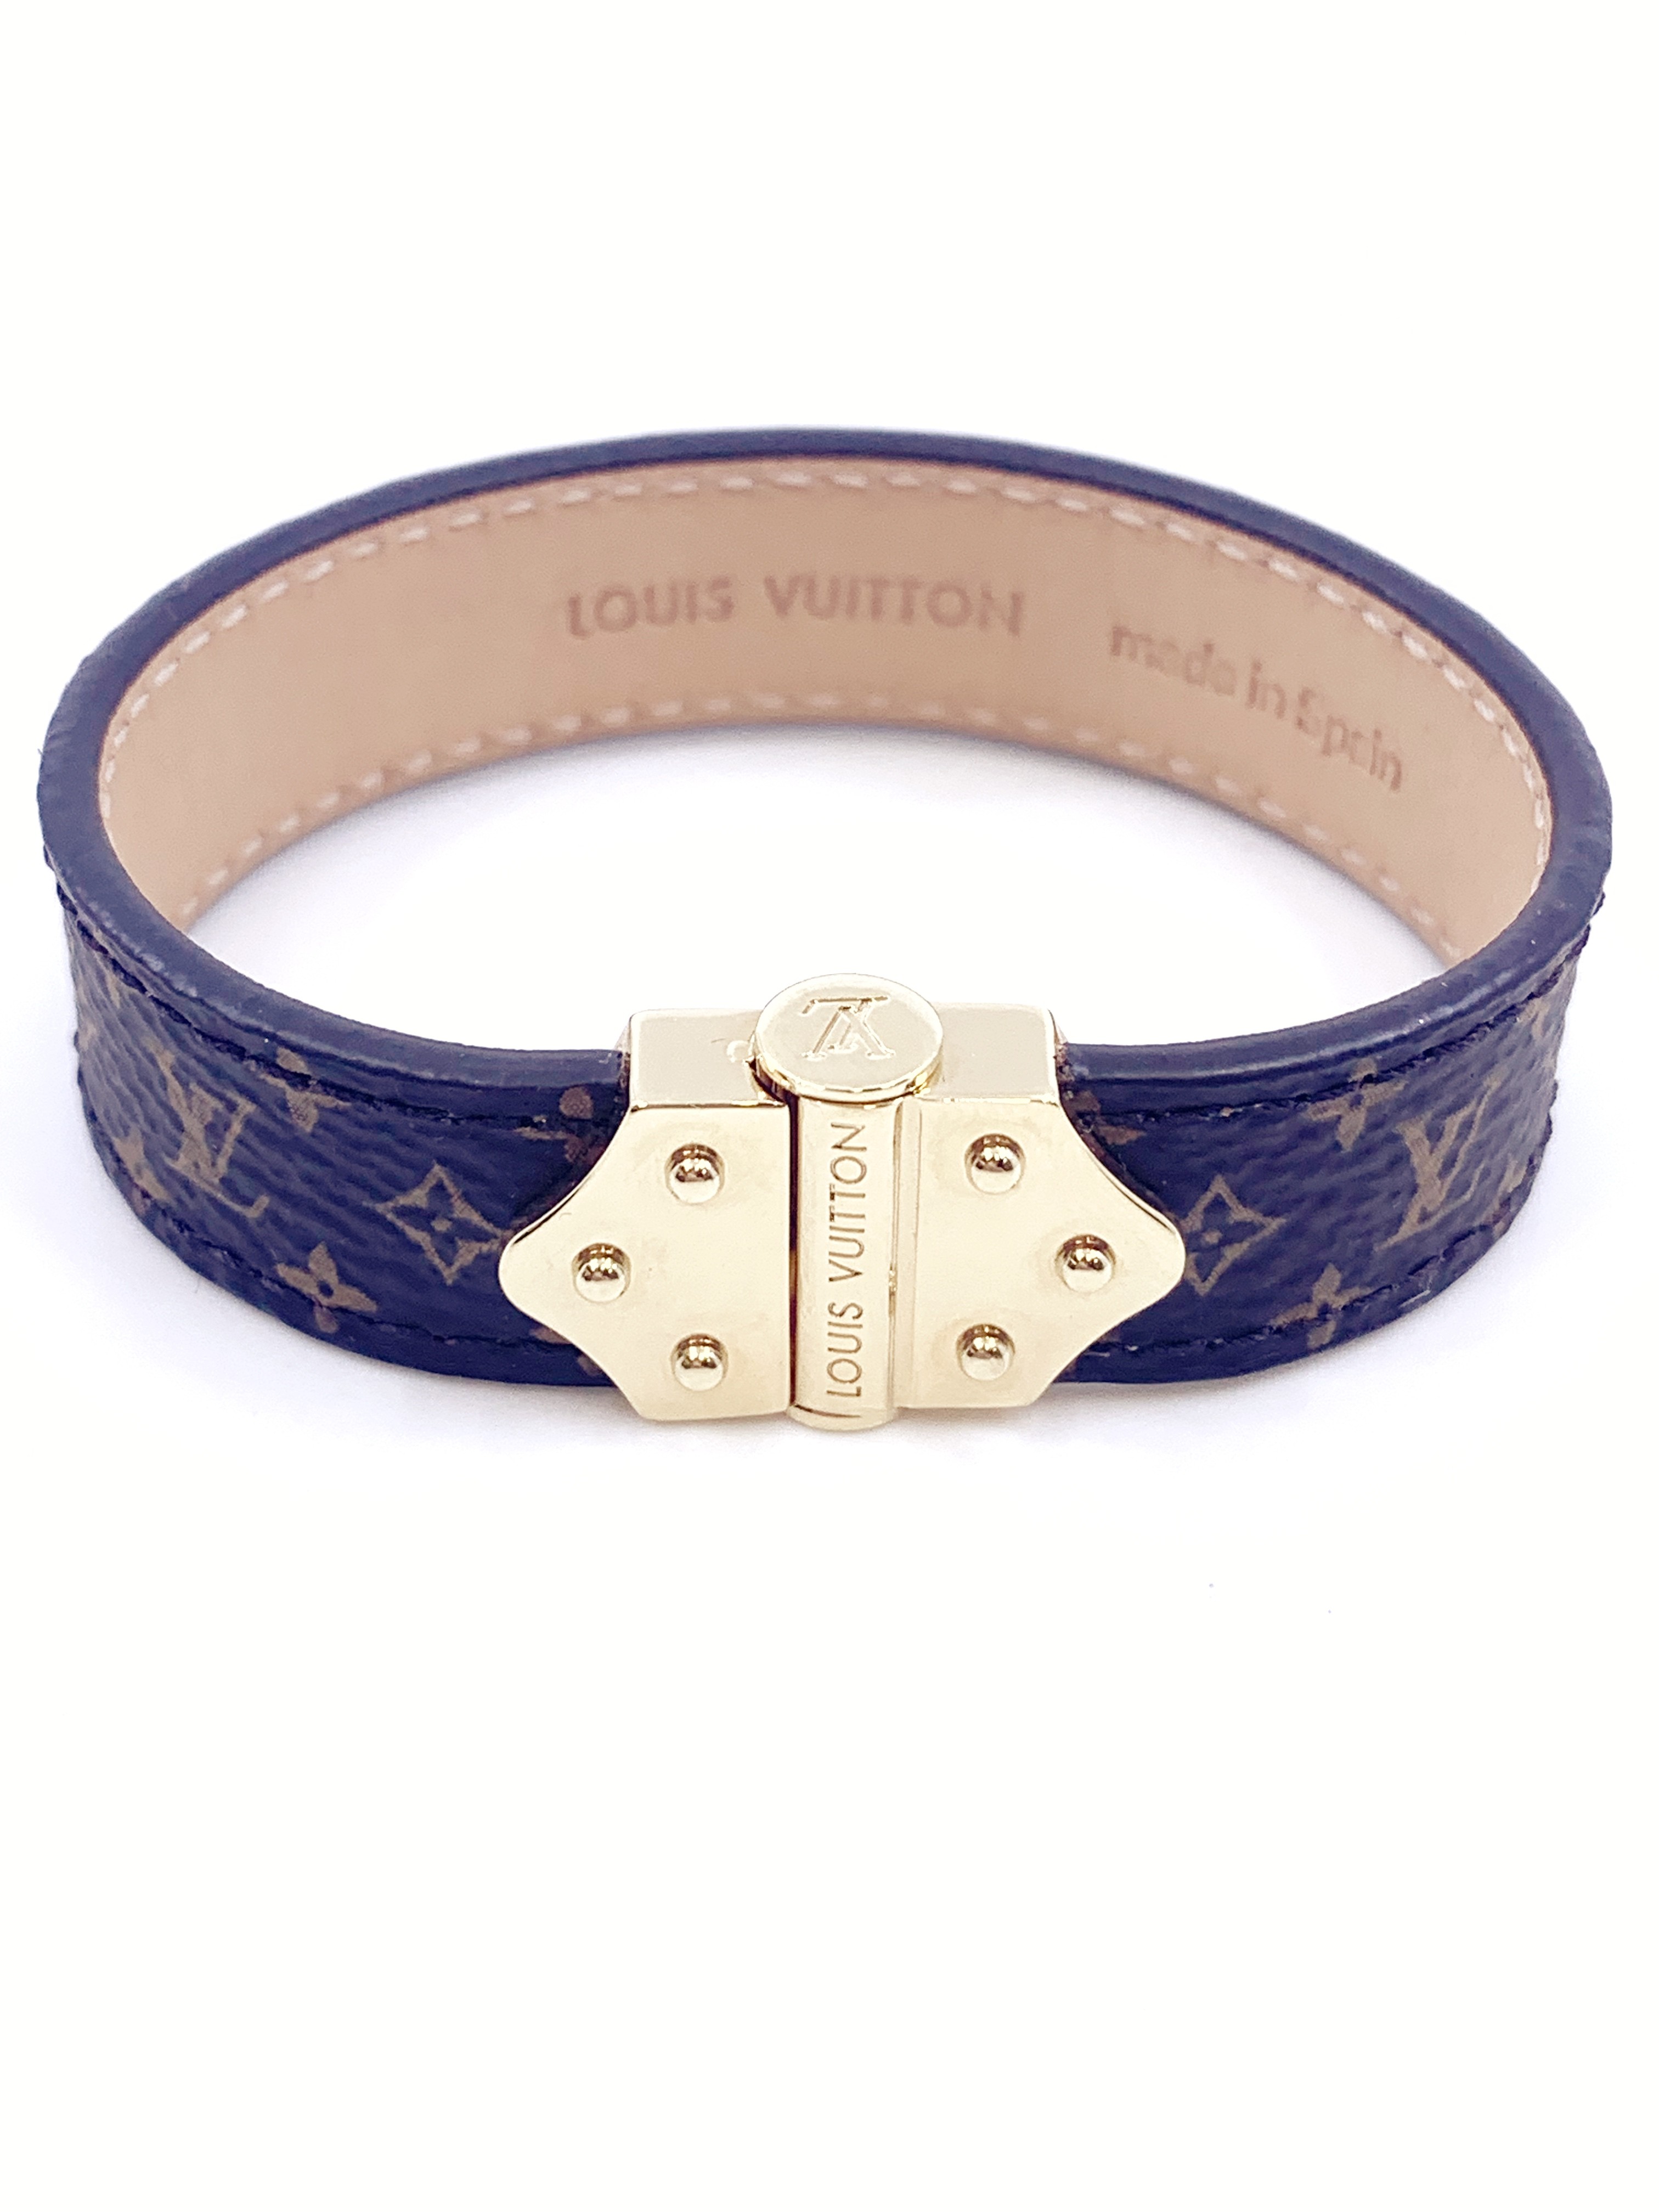 Louis Vuitton Blue Bracelet Replica